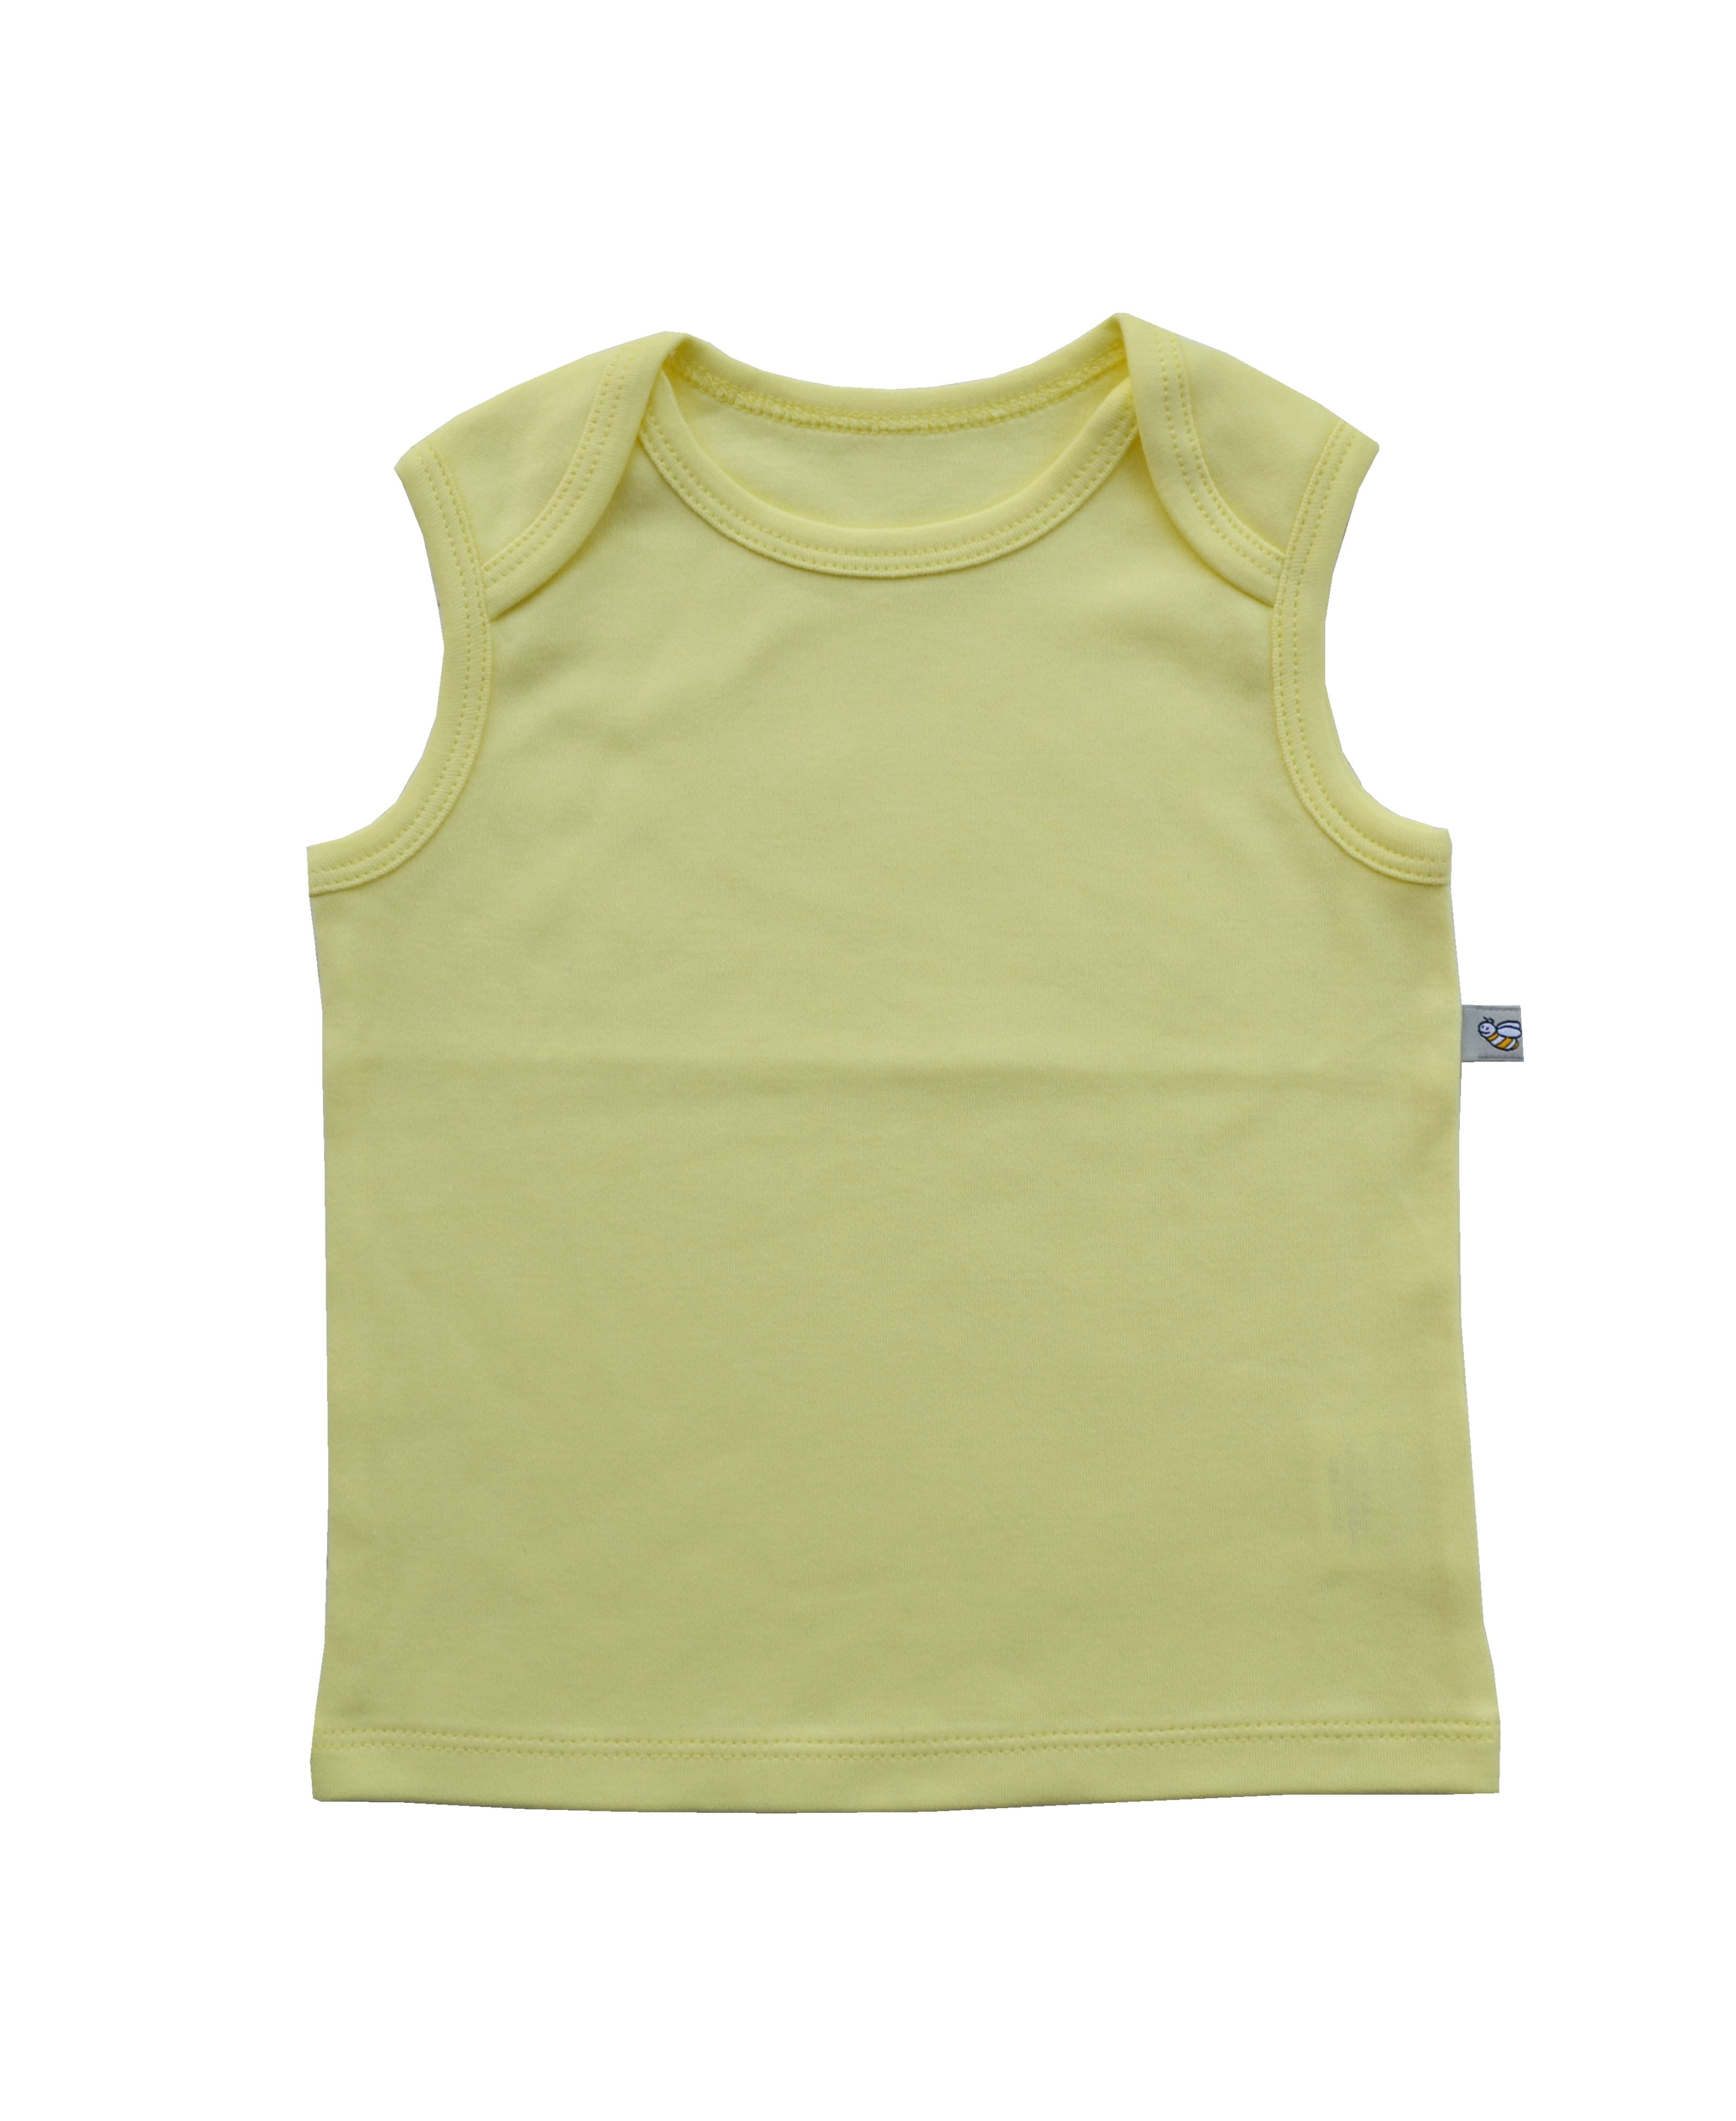 Babeez | Yellow Vest (100% Cotton Interlock Biowash) undefined